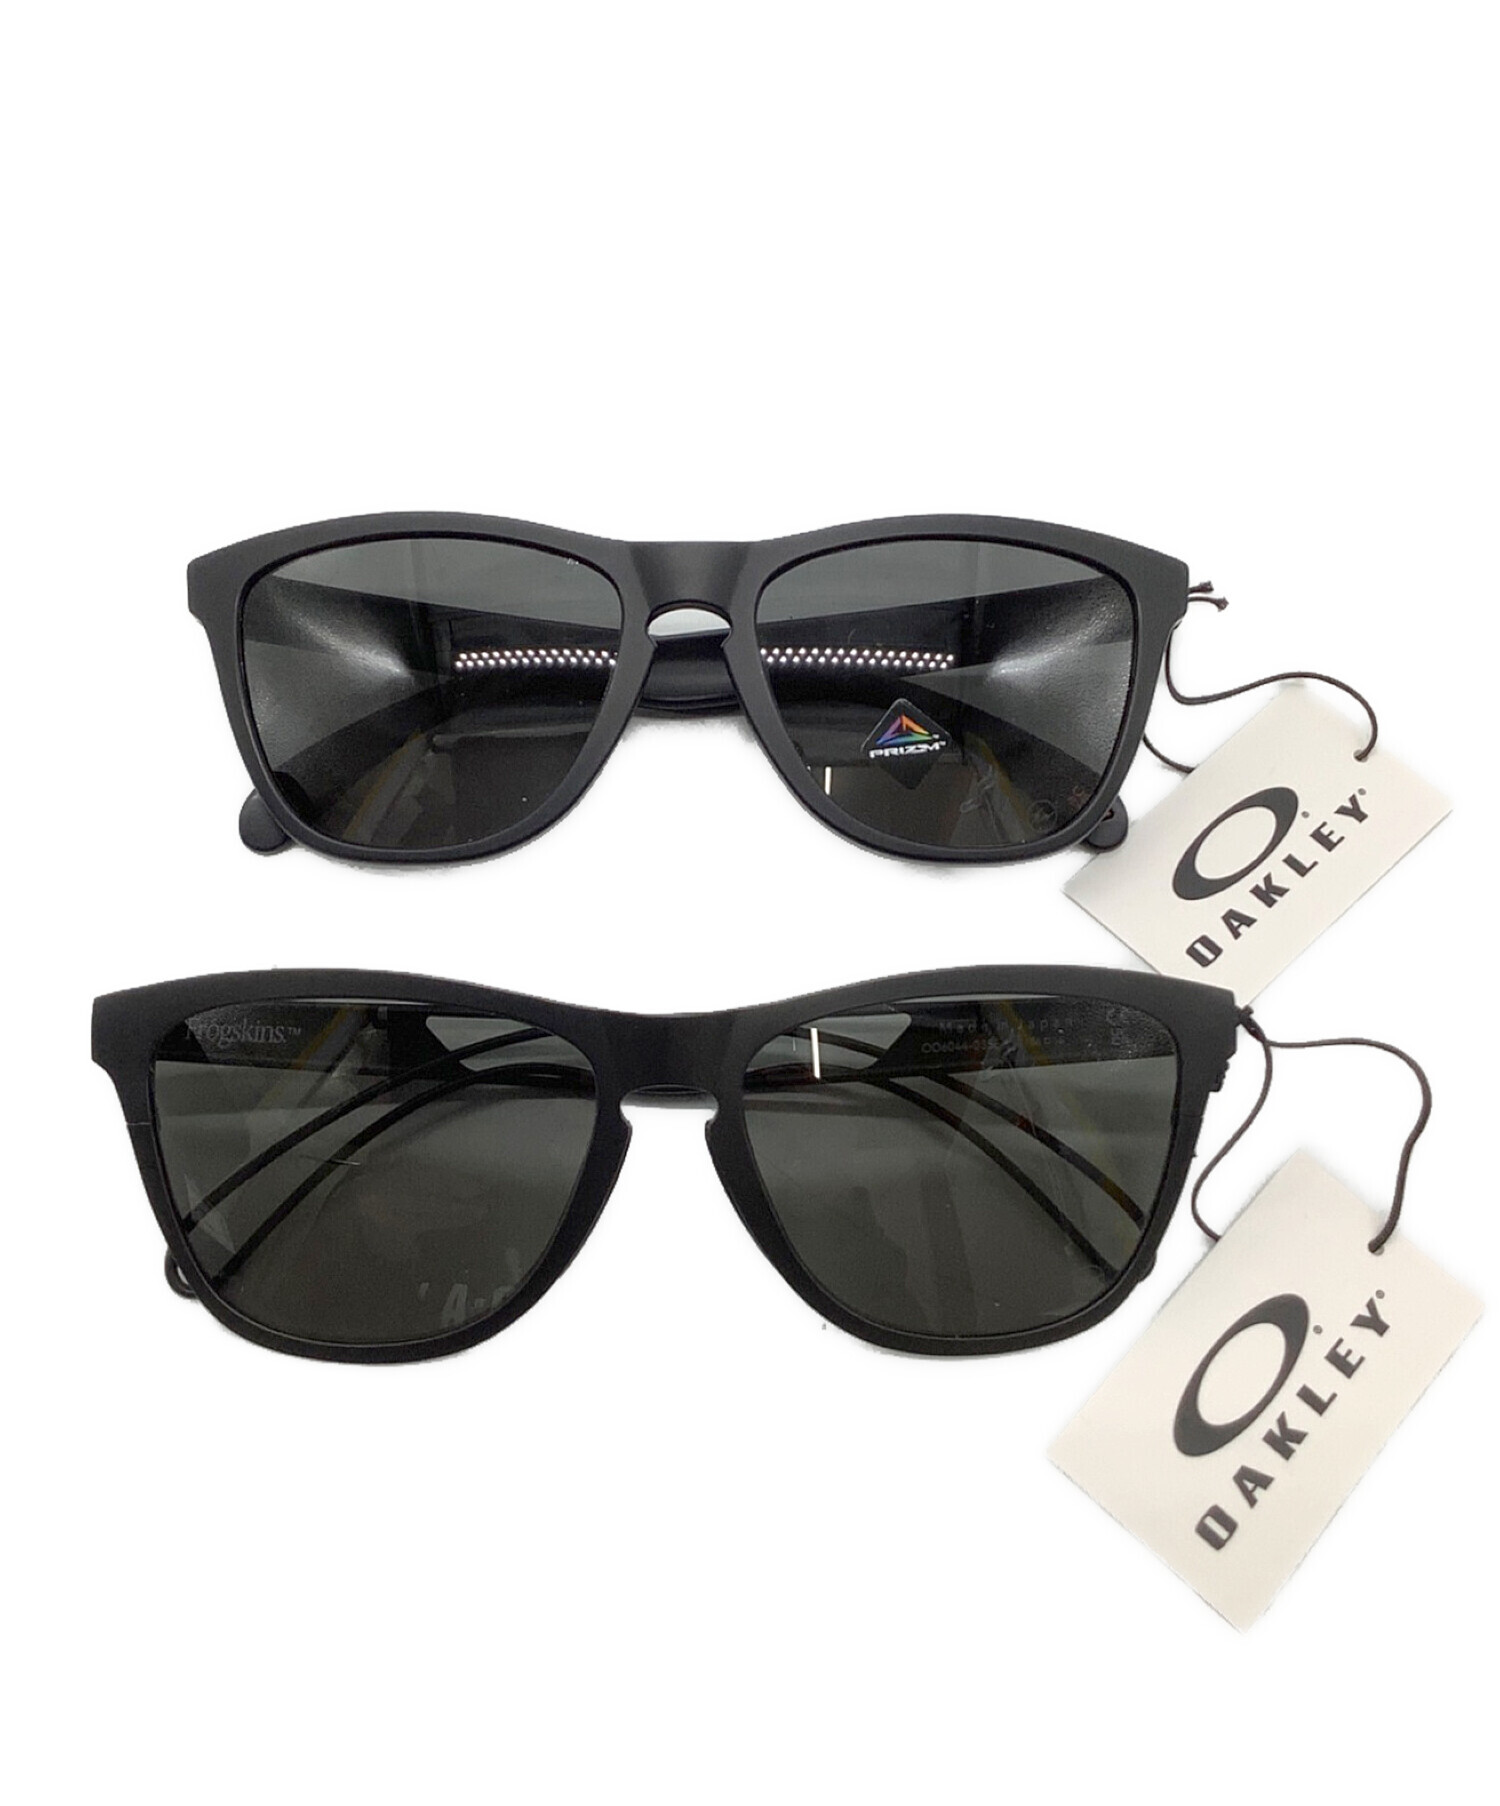 ■OAKLEY × FRAGMENT オークリー フラグメント サングラス 眼鏡レンズカラーグレー